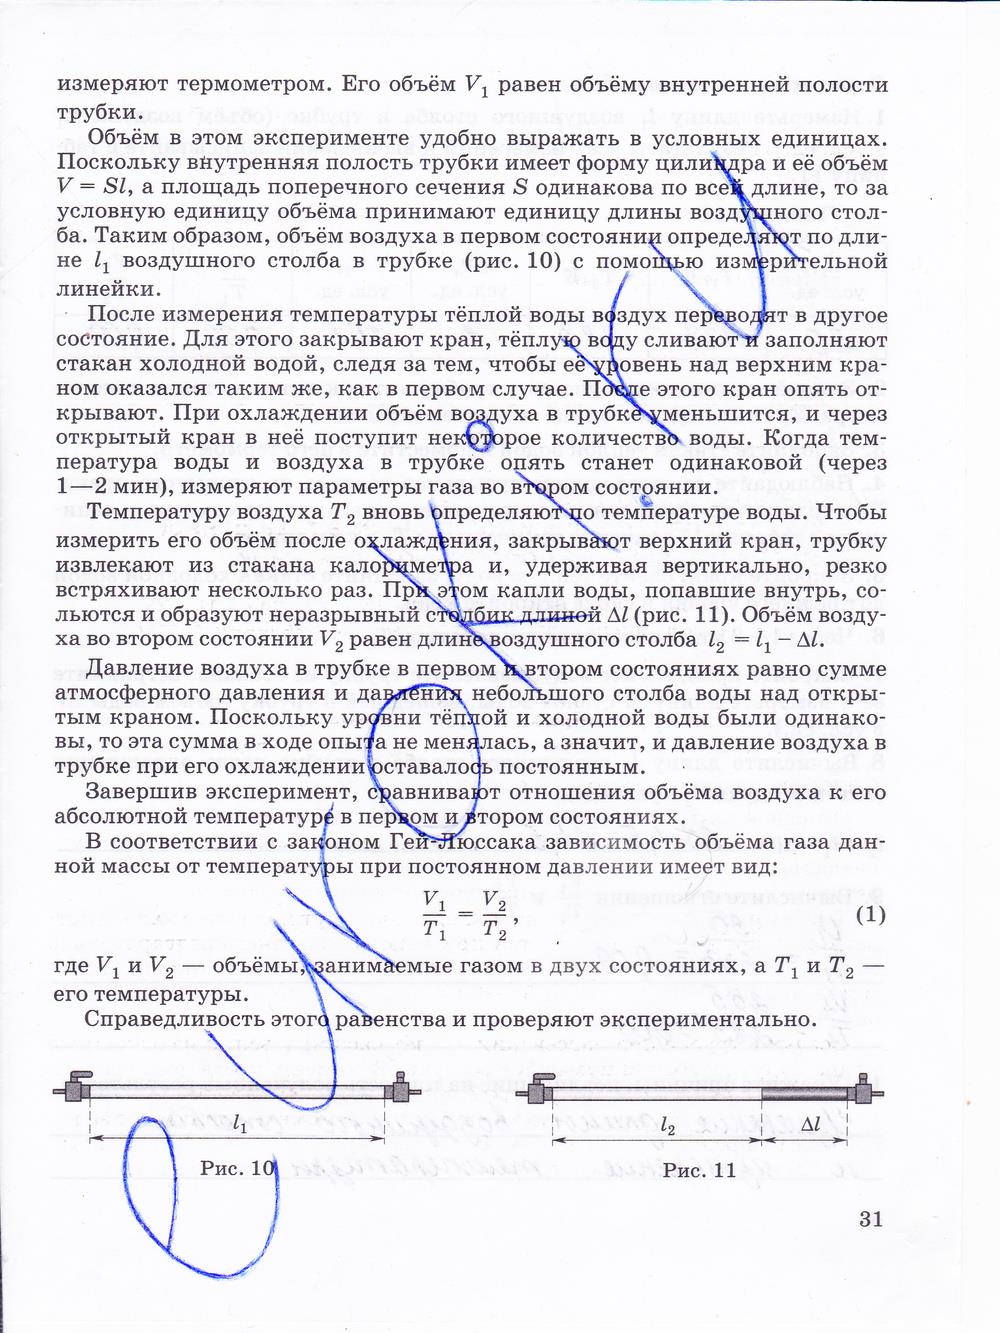 гдз 10 класс тетрадь для лабораторных работ страница 31 физика Пурышева, Степанов